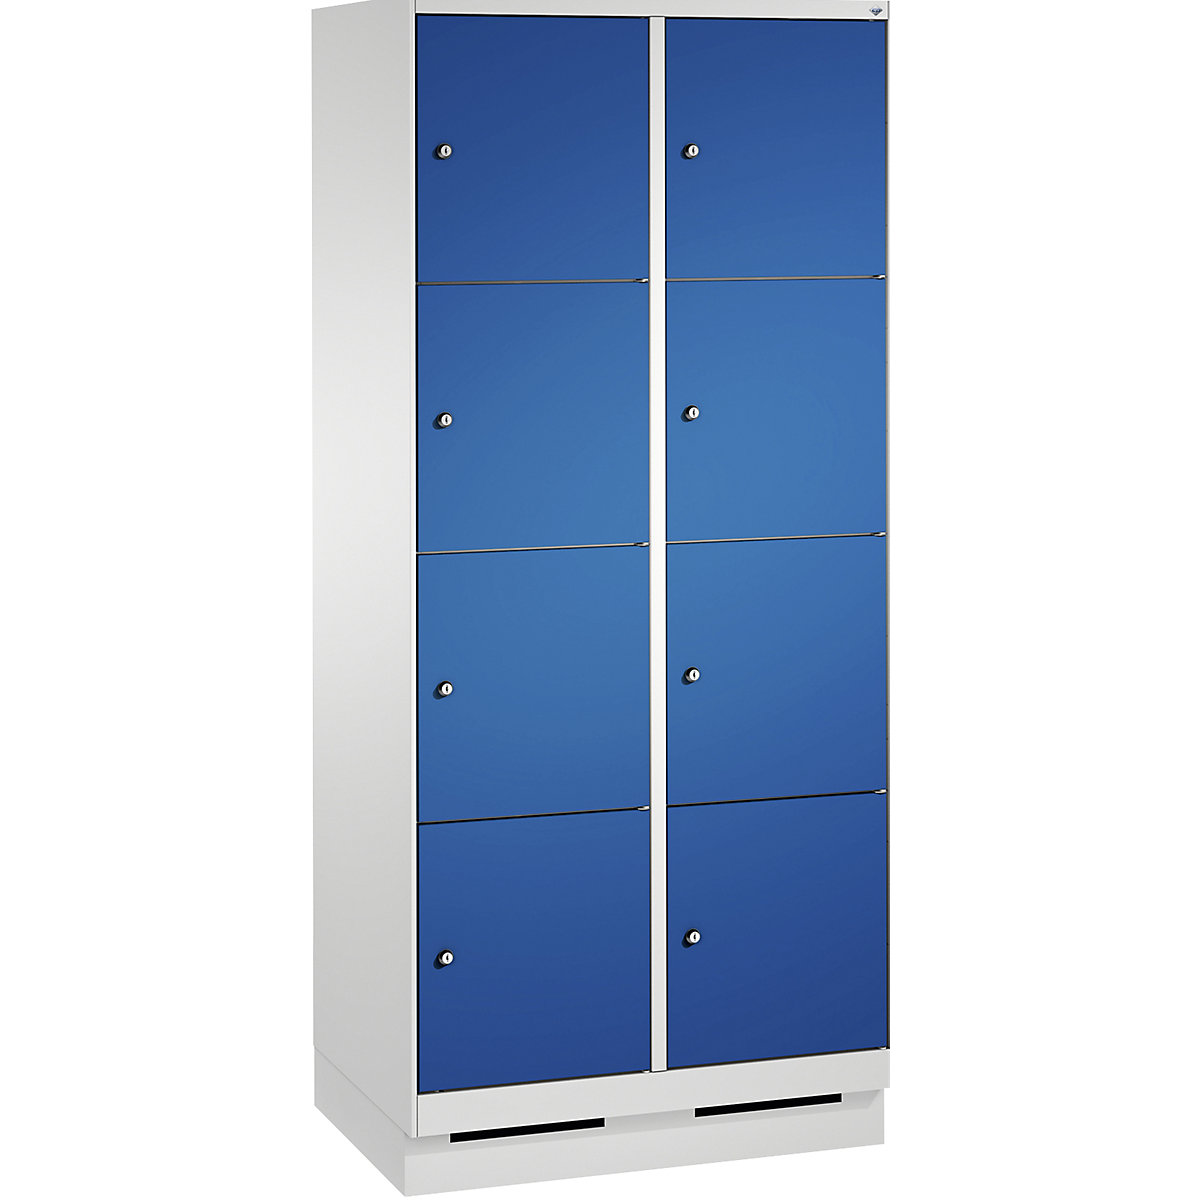 Armoire à casiers sur socle EVOLO – C+P, 2 compartiments, 4 casiers chacun, largeur compartiments 400 mm, gris clair / bleu gentiane-3